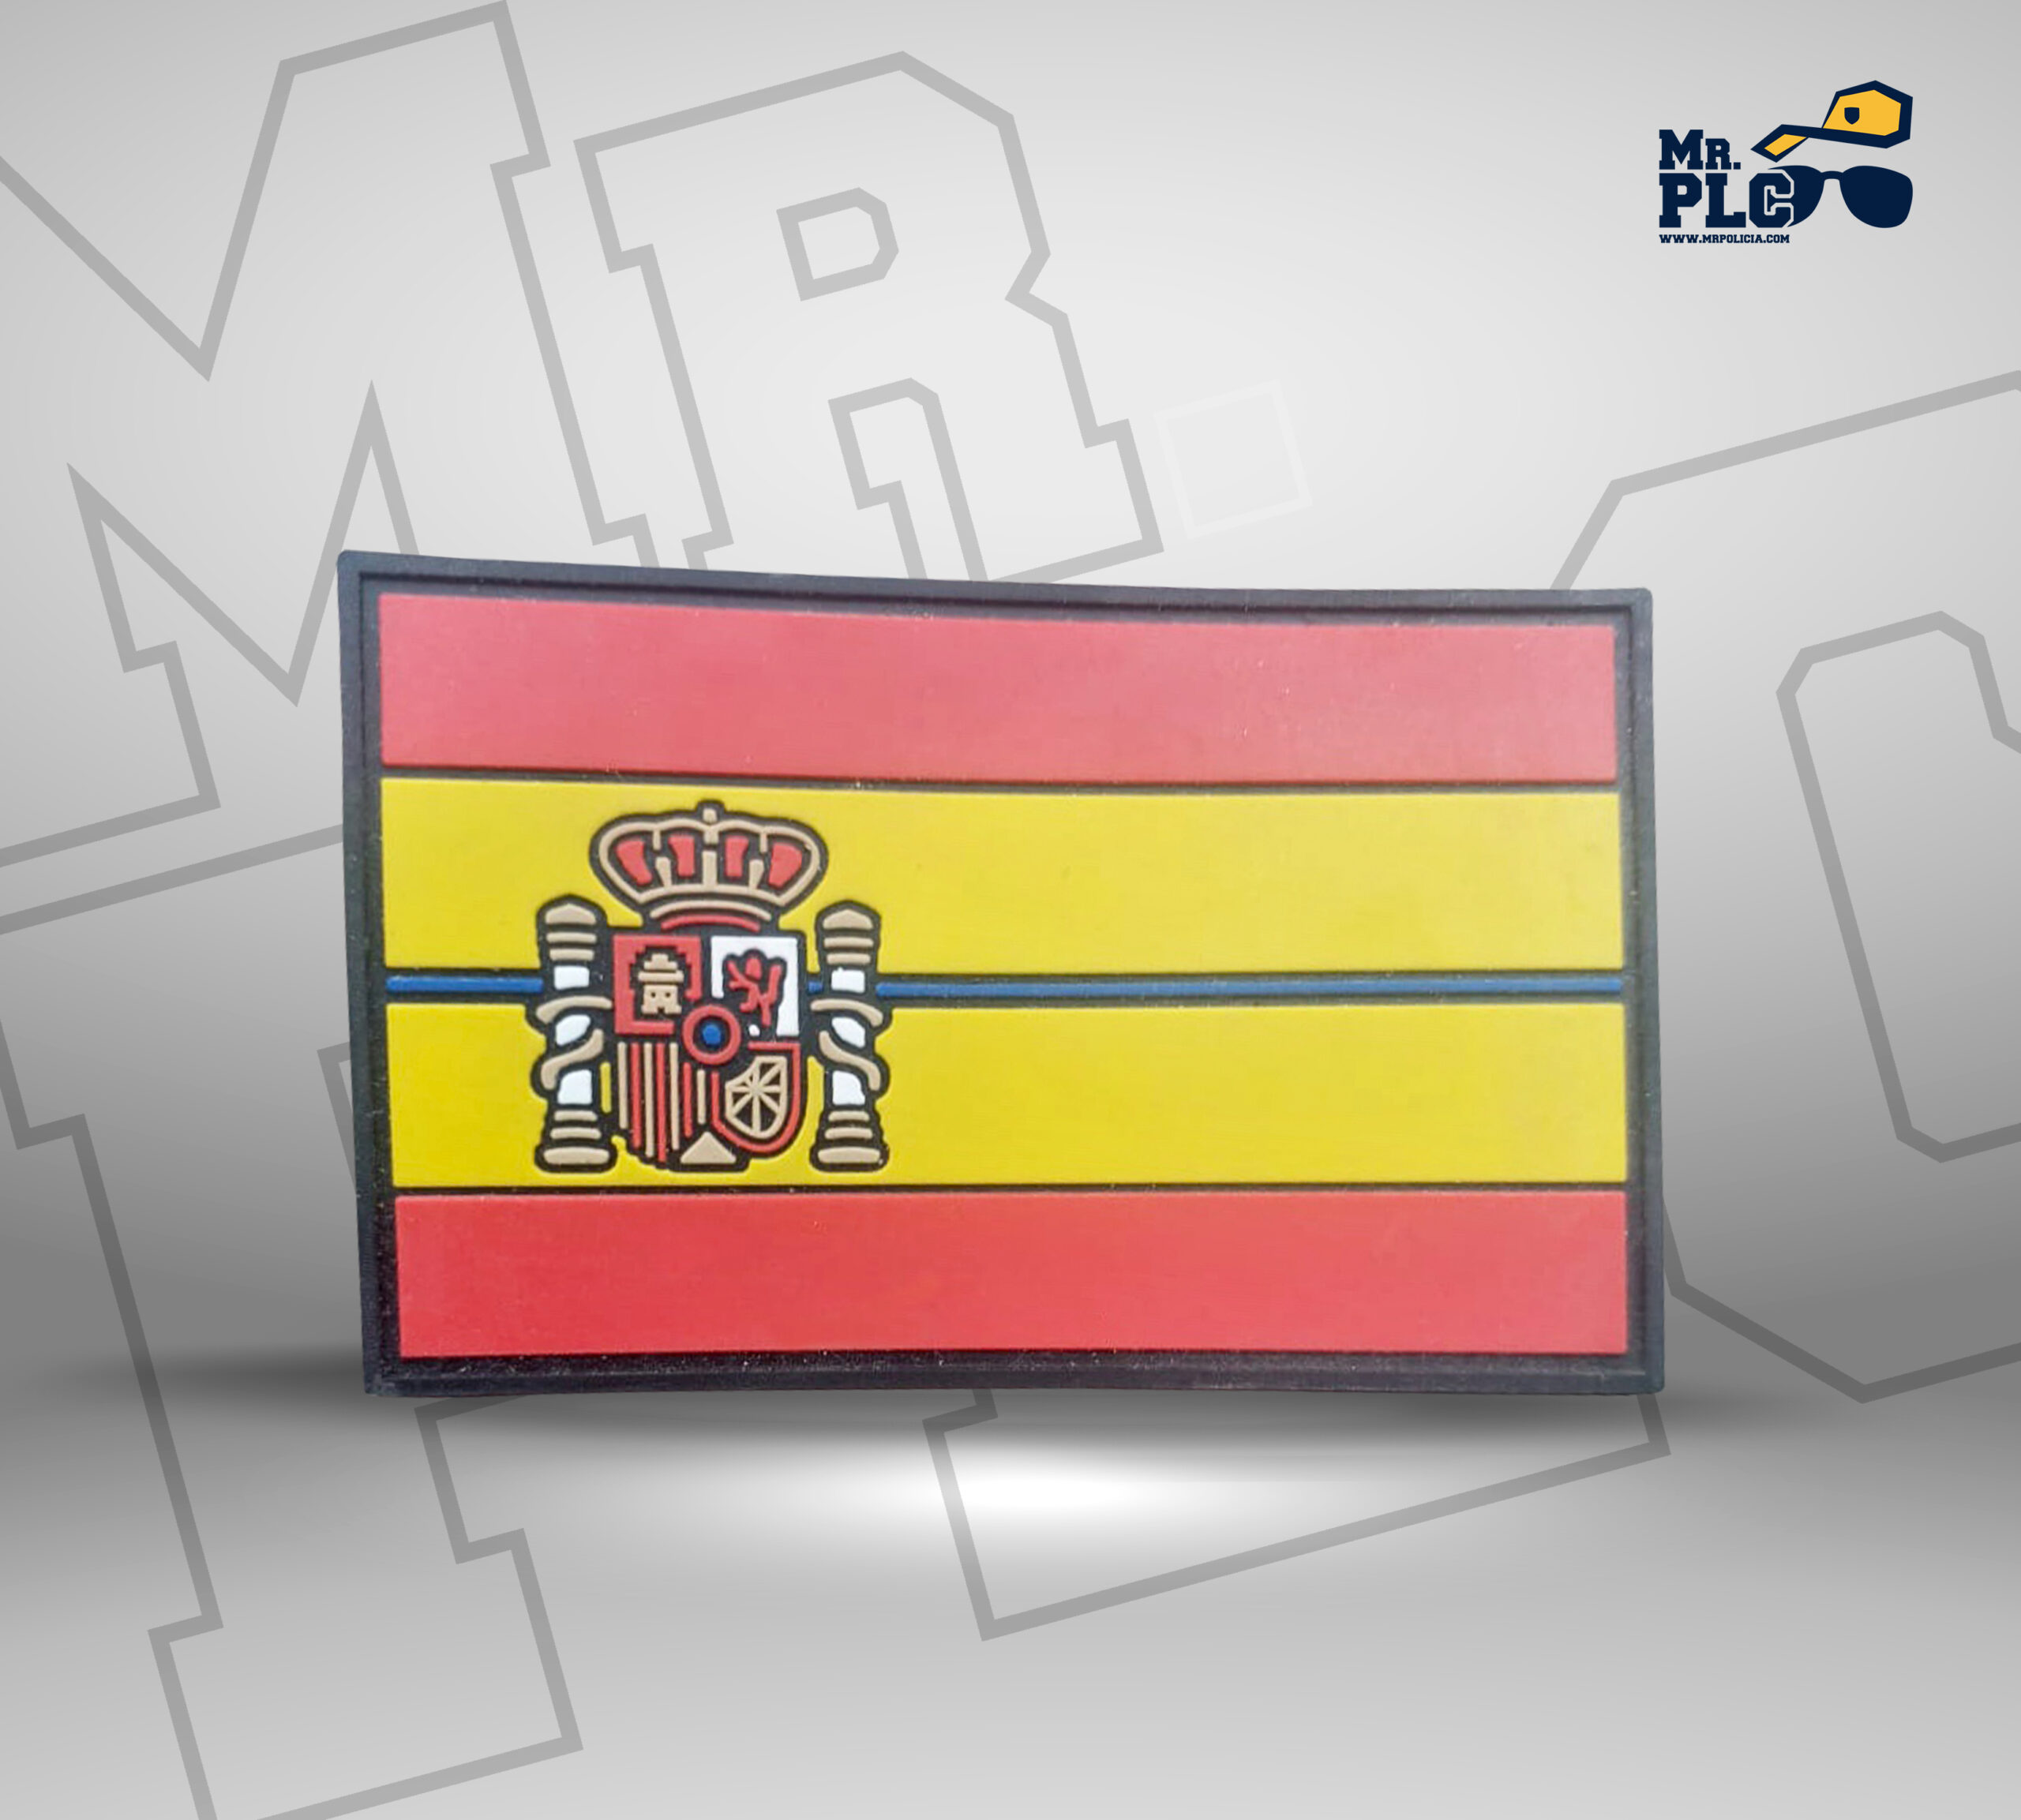 Parche Bandera España 6x3 cm con velcro